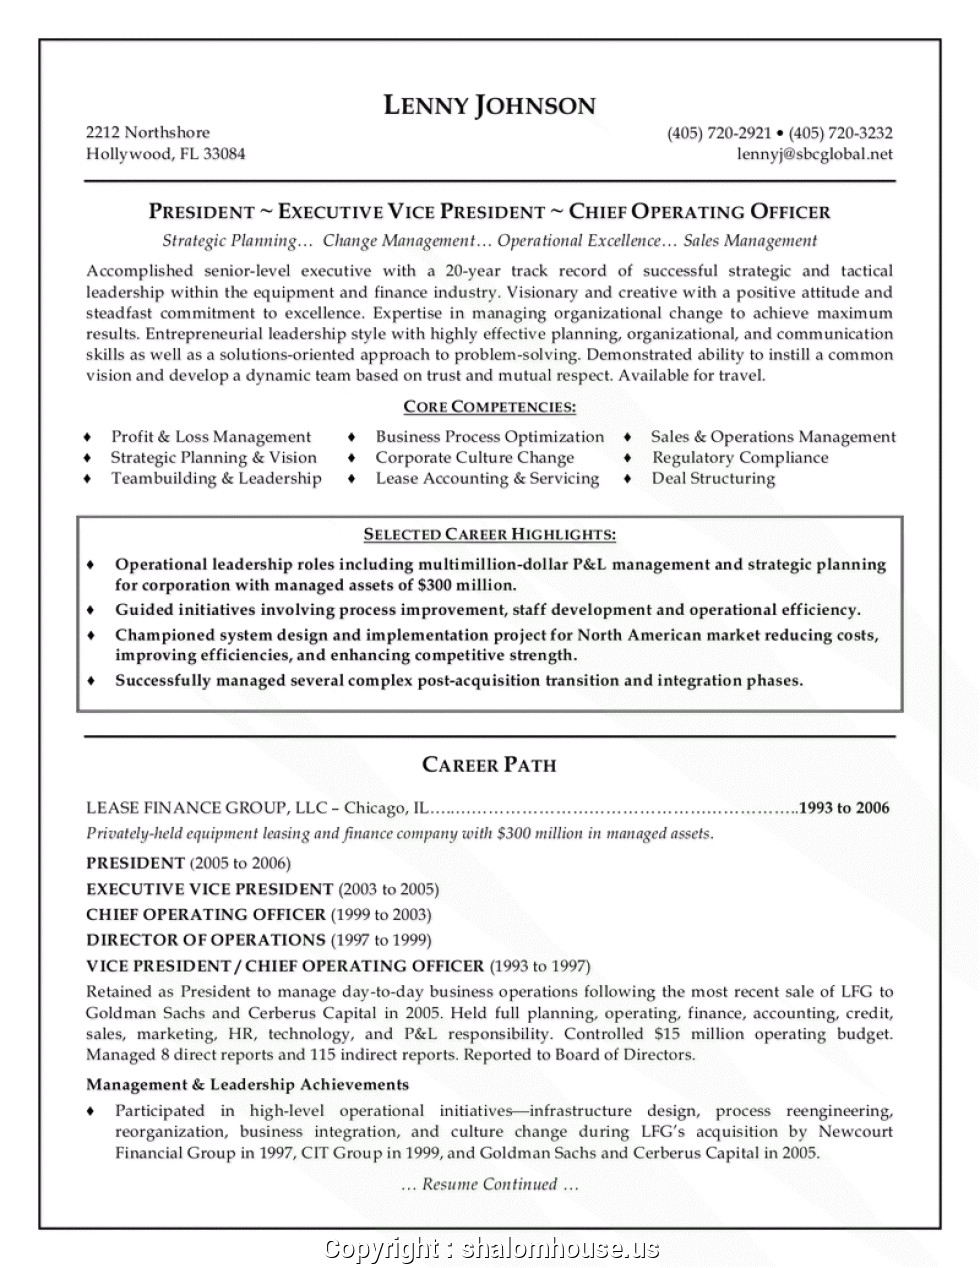 Resume format Word for Senior Management Position top Resume format for Senior Management Position Senior